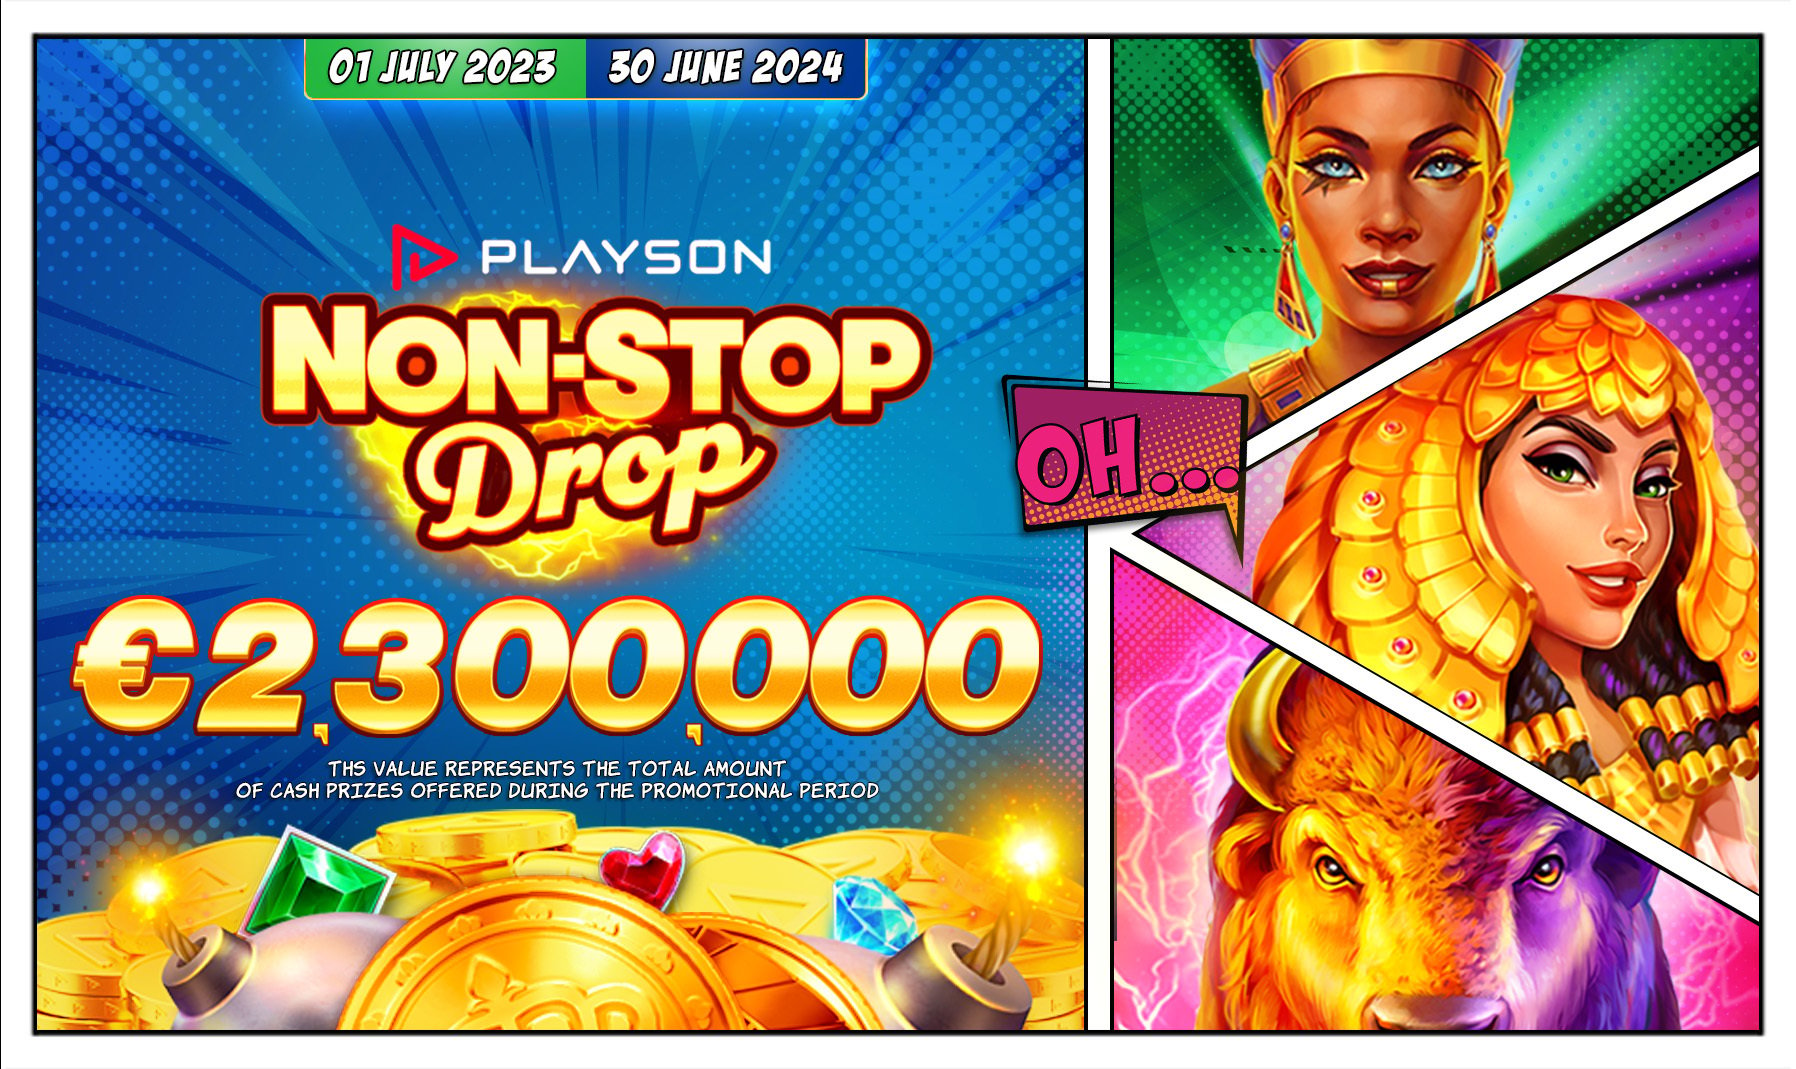 Playson Non-Stop Drop 2,300,000 EUR